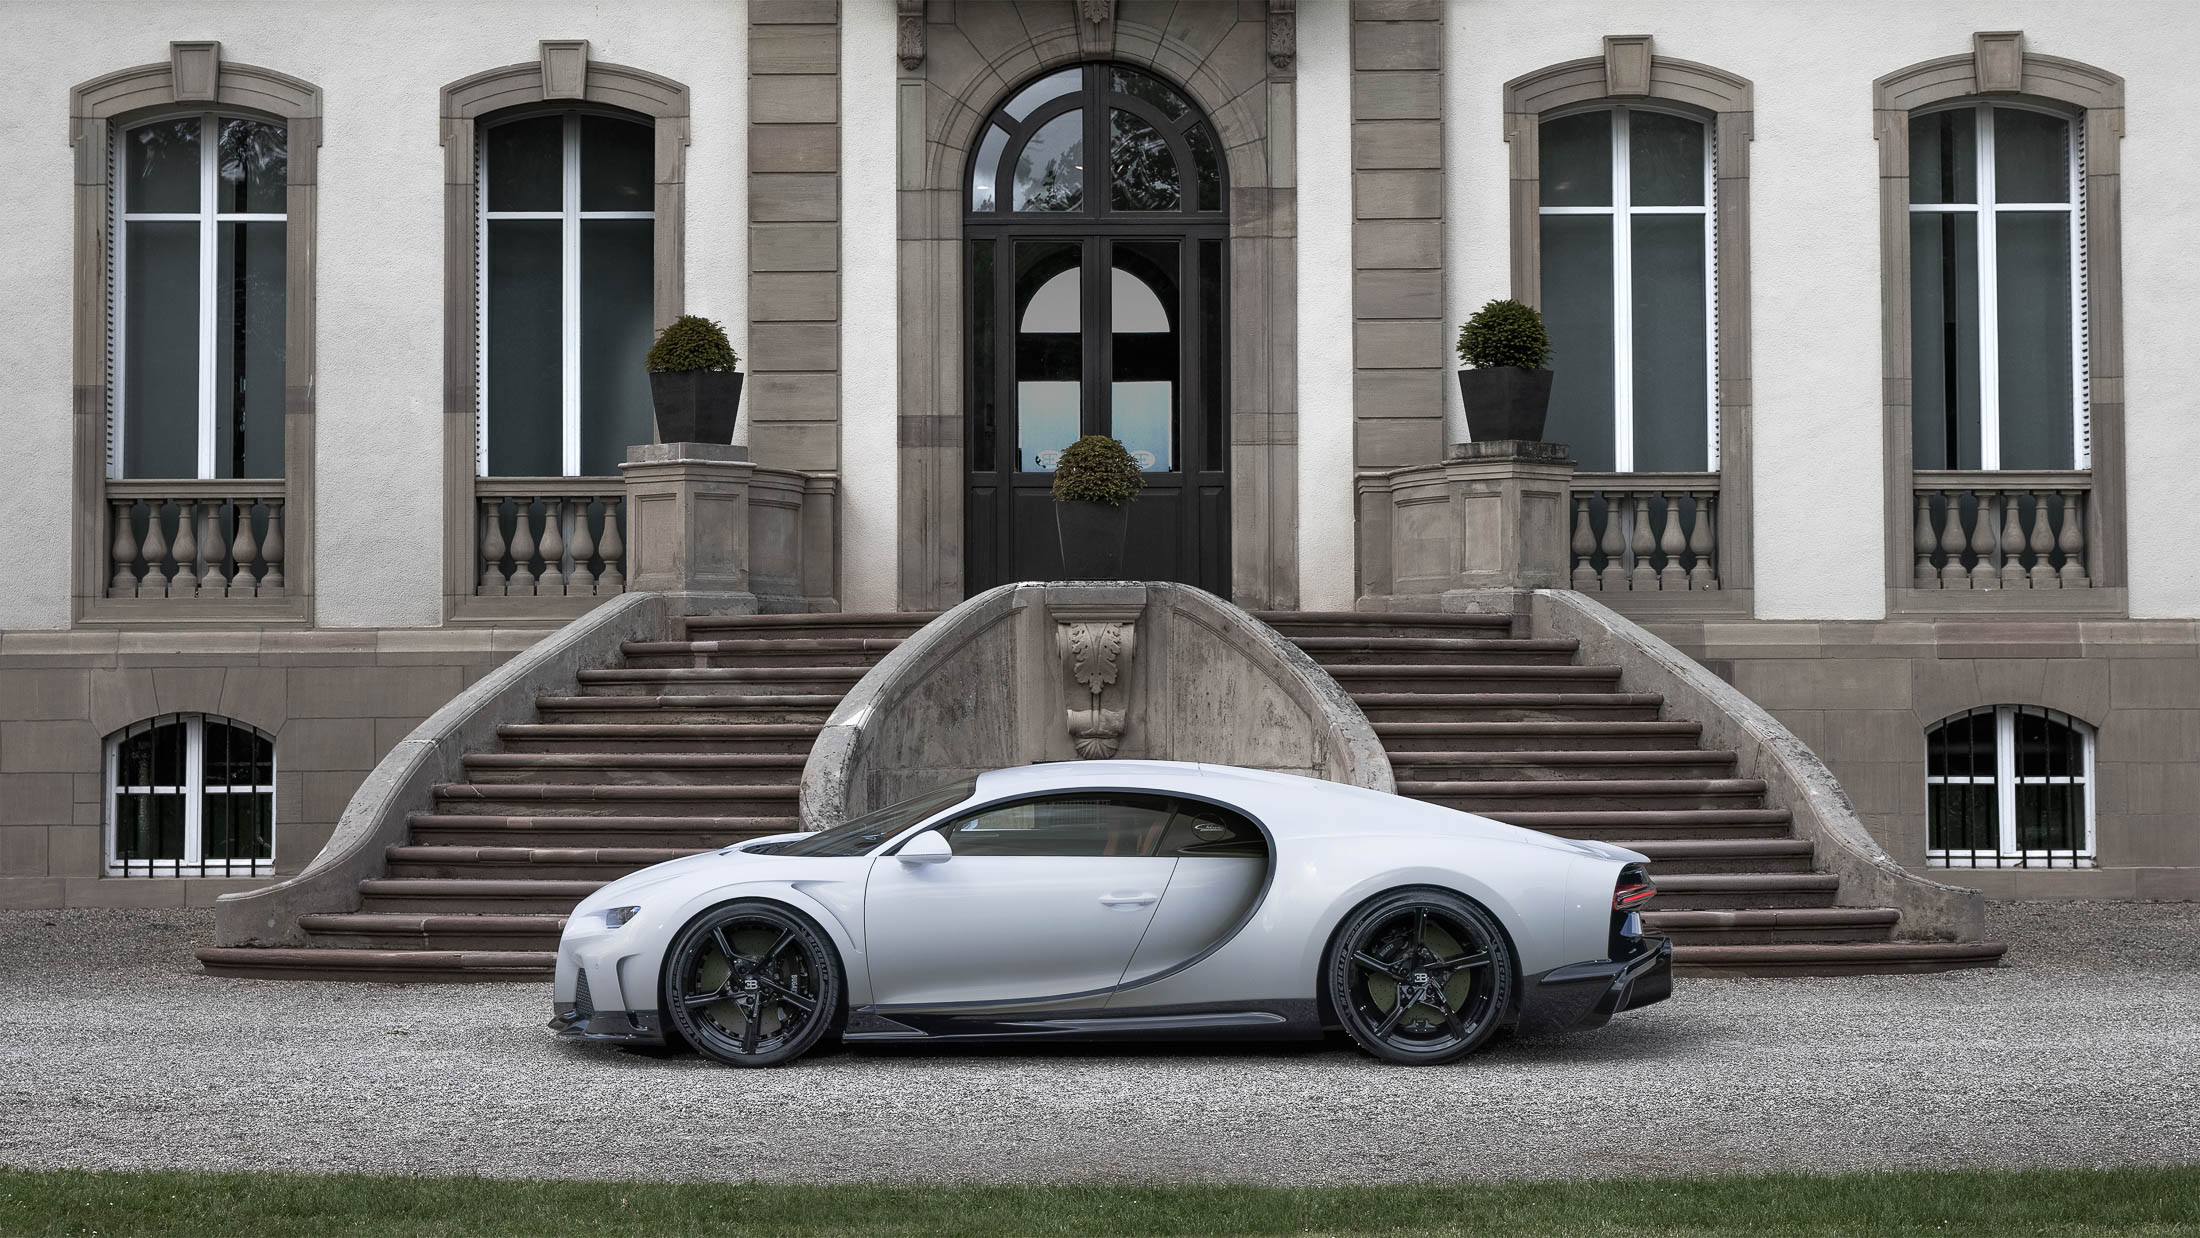 Bugatti announces production of the $4,000,000 Chiron Super Sport 300+ -  Acquire